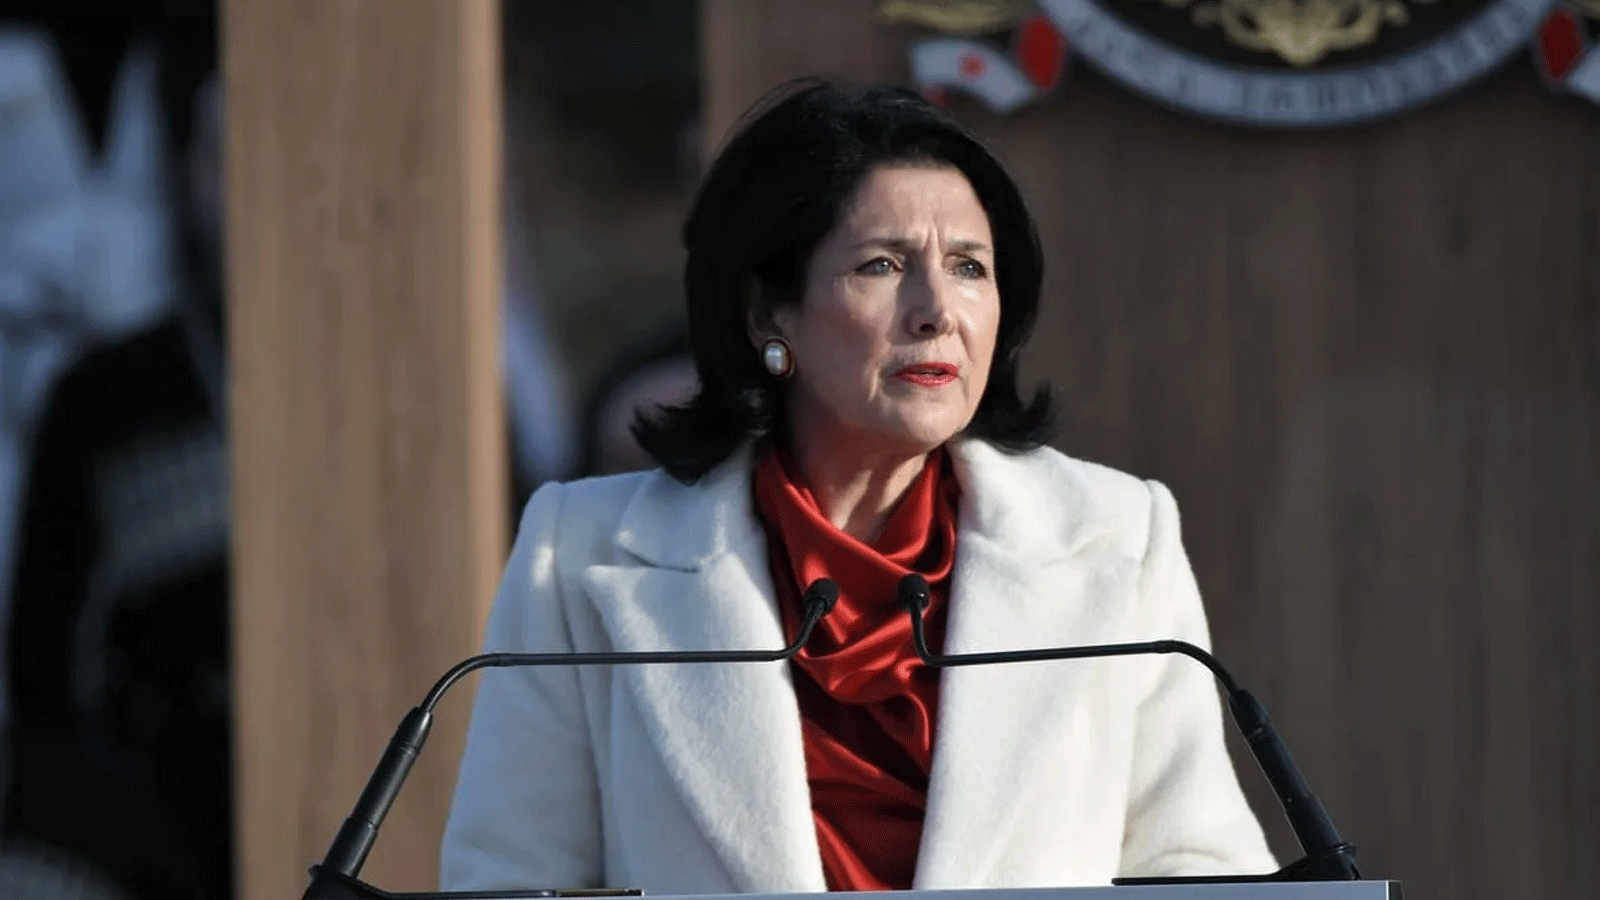 الرئيسة الجورجية سالومي زورابيشفيلي